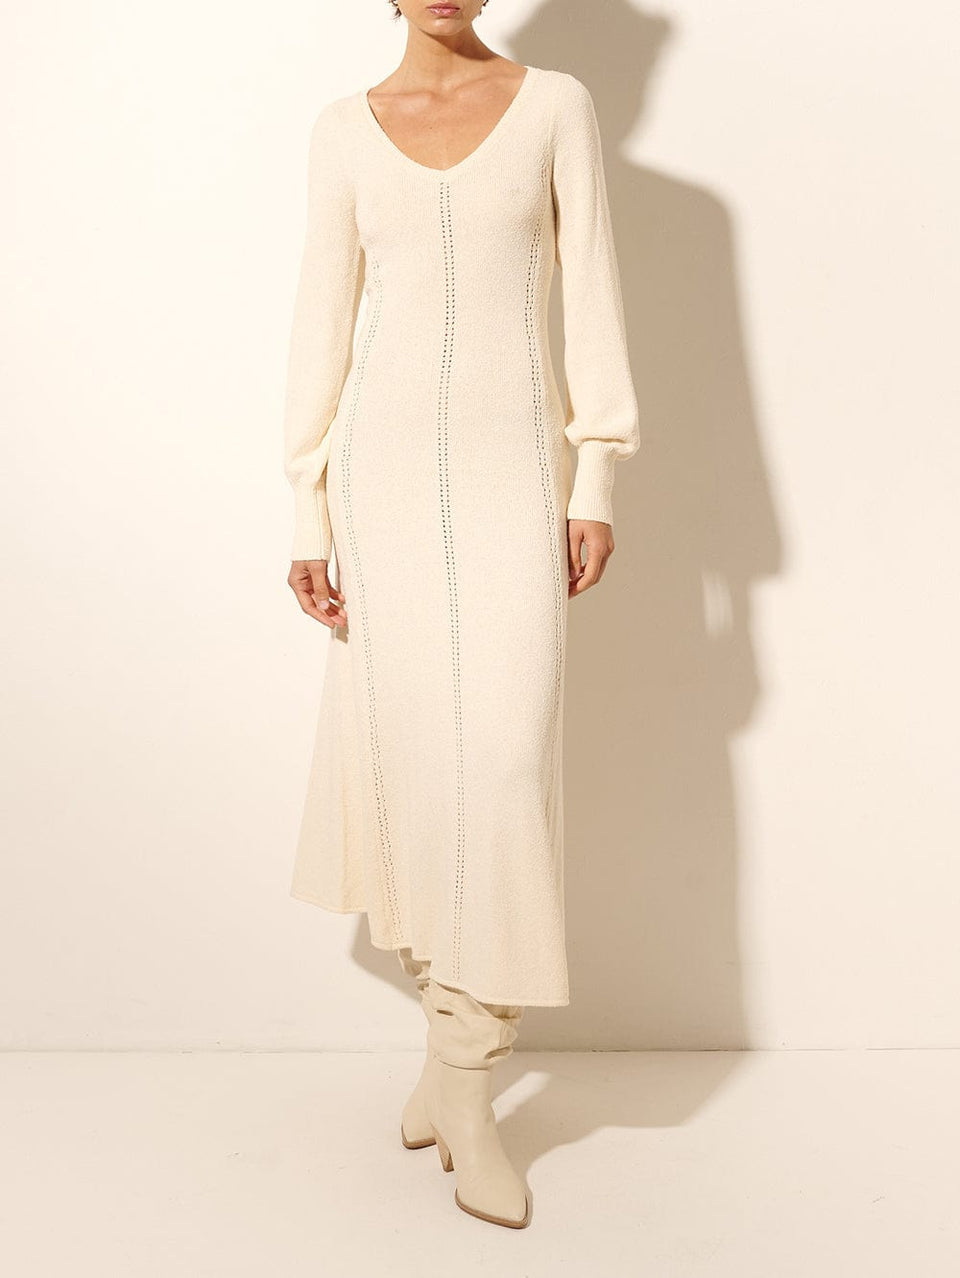 Cali Knit Dress KIVARI | Model wears cream knit midi dress